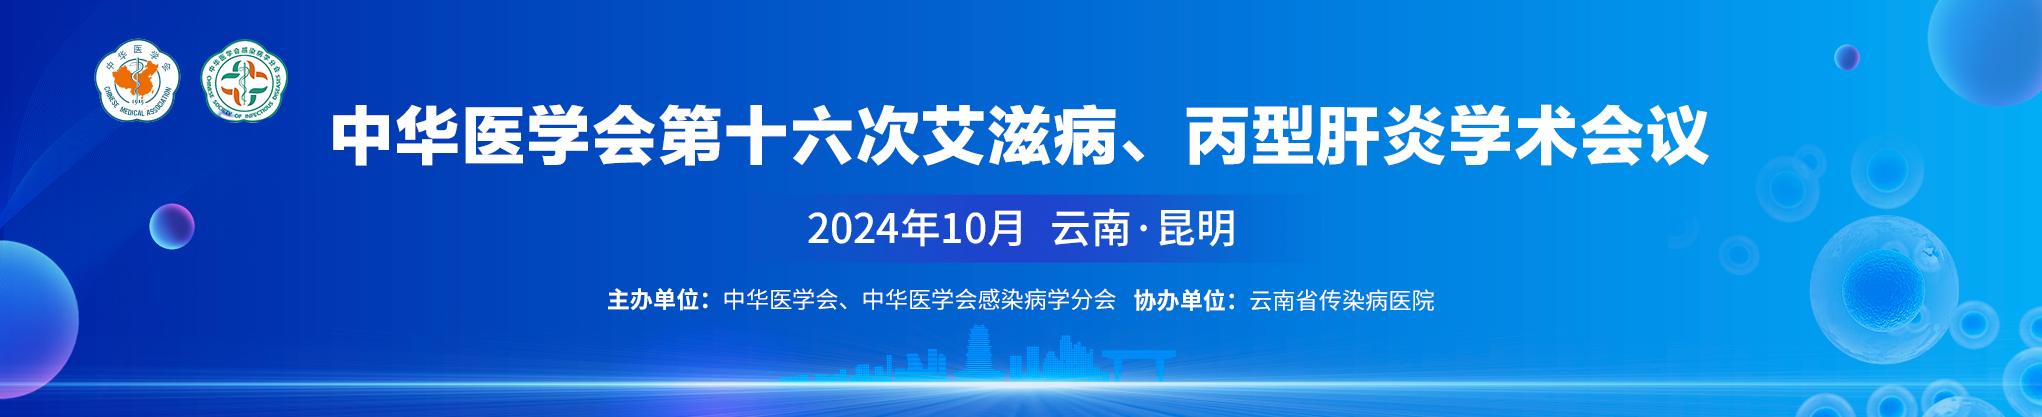 中华医学会第十六次艾滋病、丙型肝炎学术会议